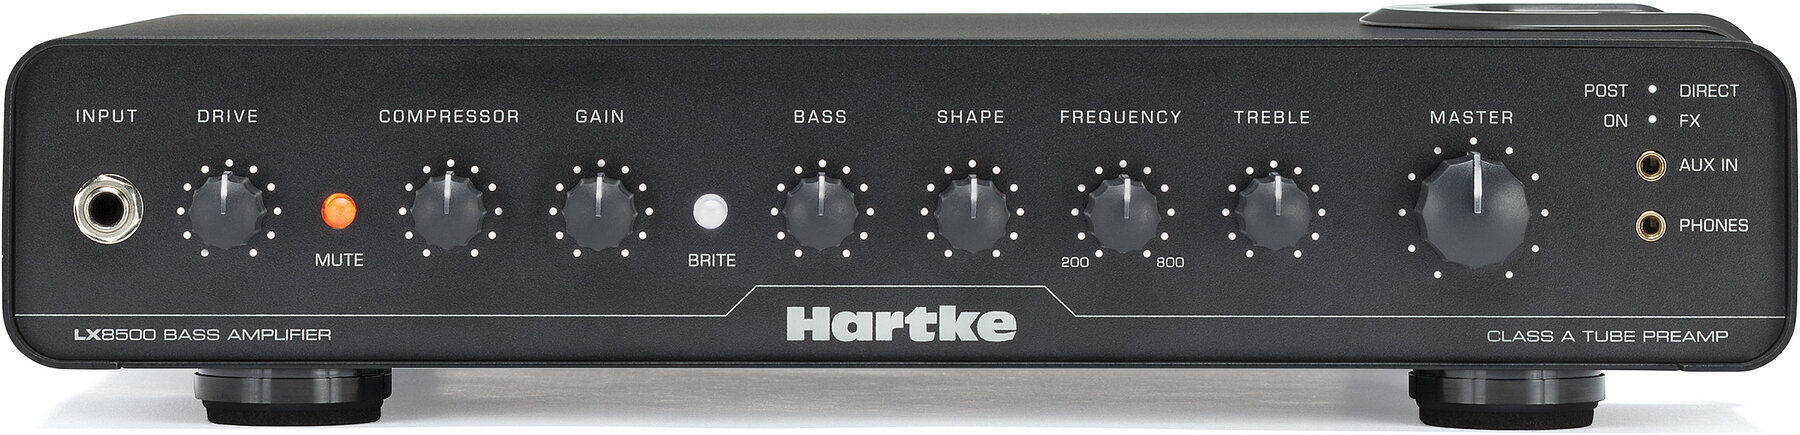 Hybrid Bass Amplifier Hartke LX8500